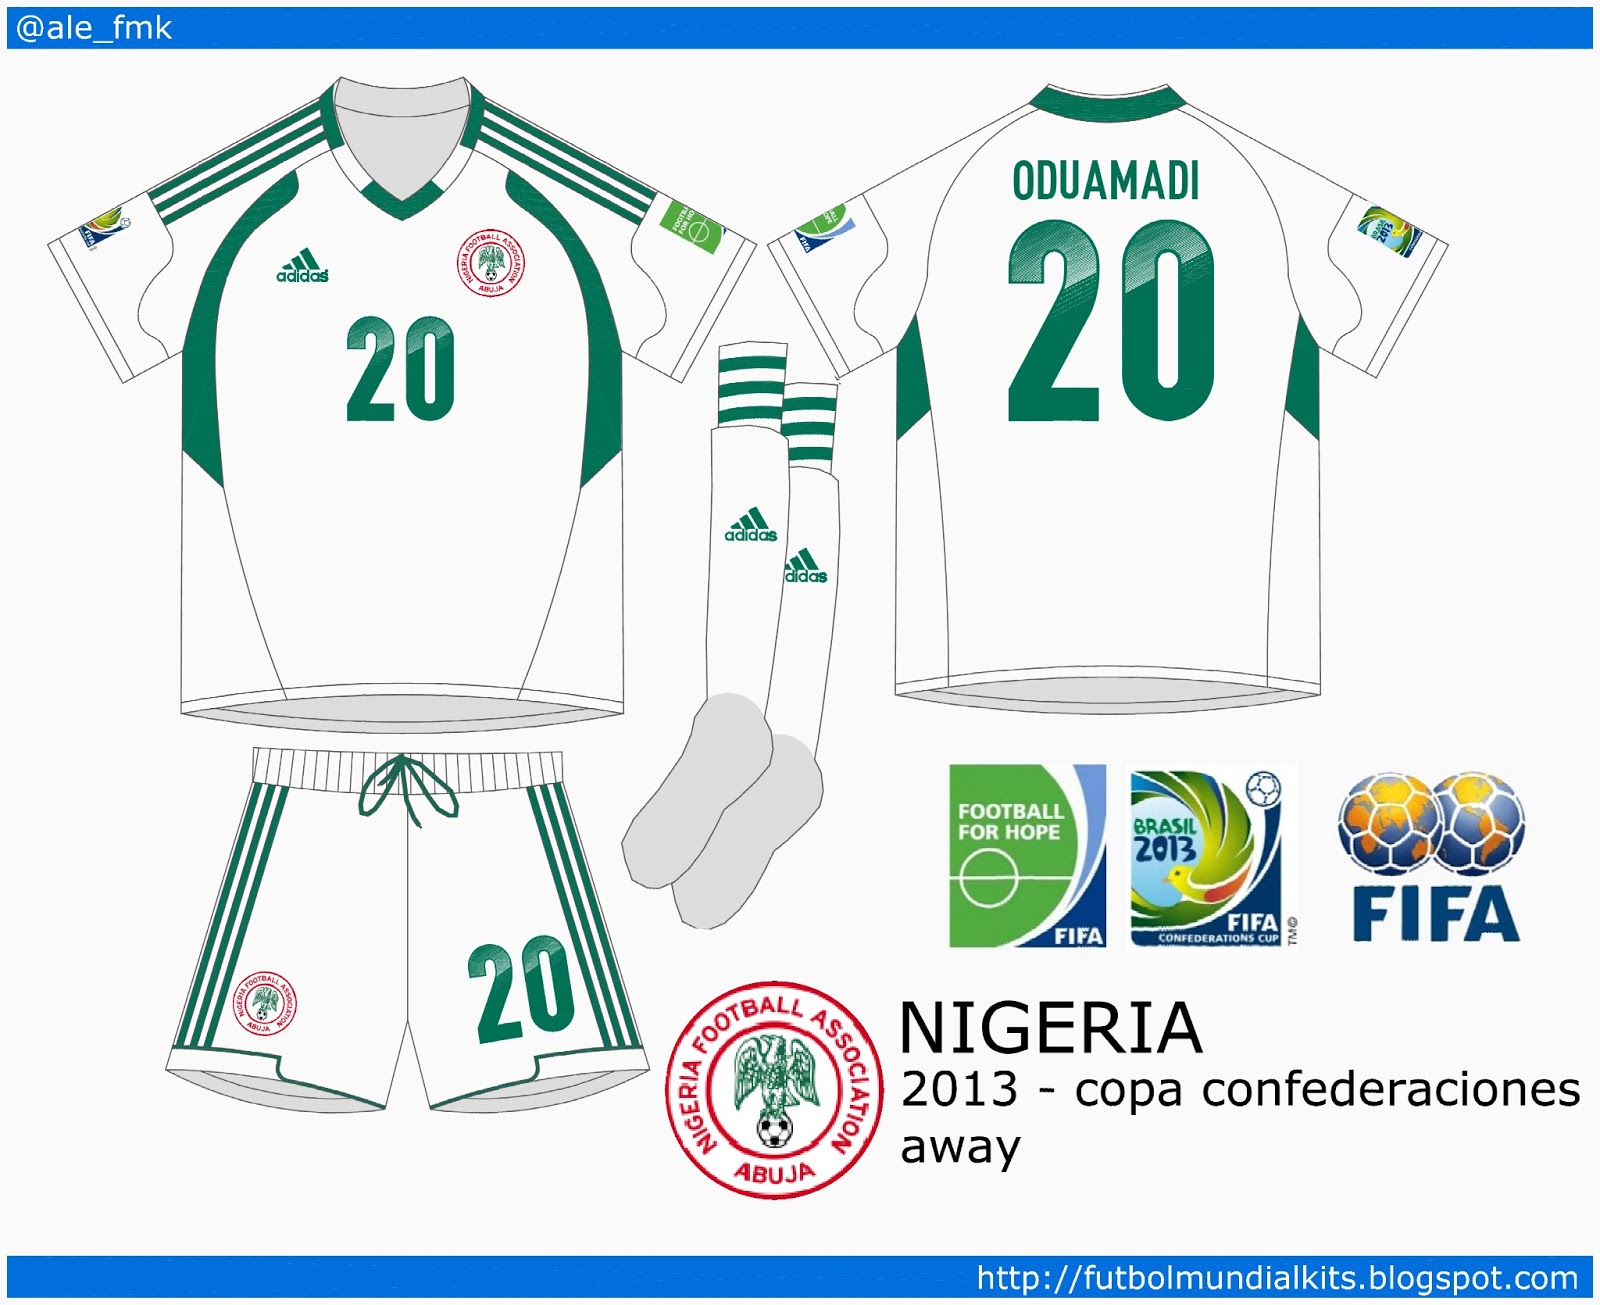 Fútbol Mundial Kits - Uruguay: Selección de Nigeria - 2013 (copa ...